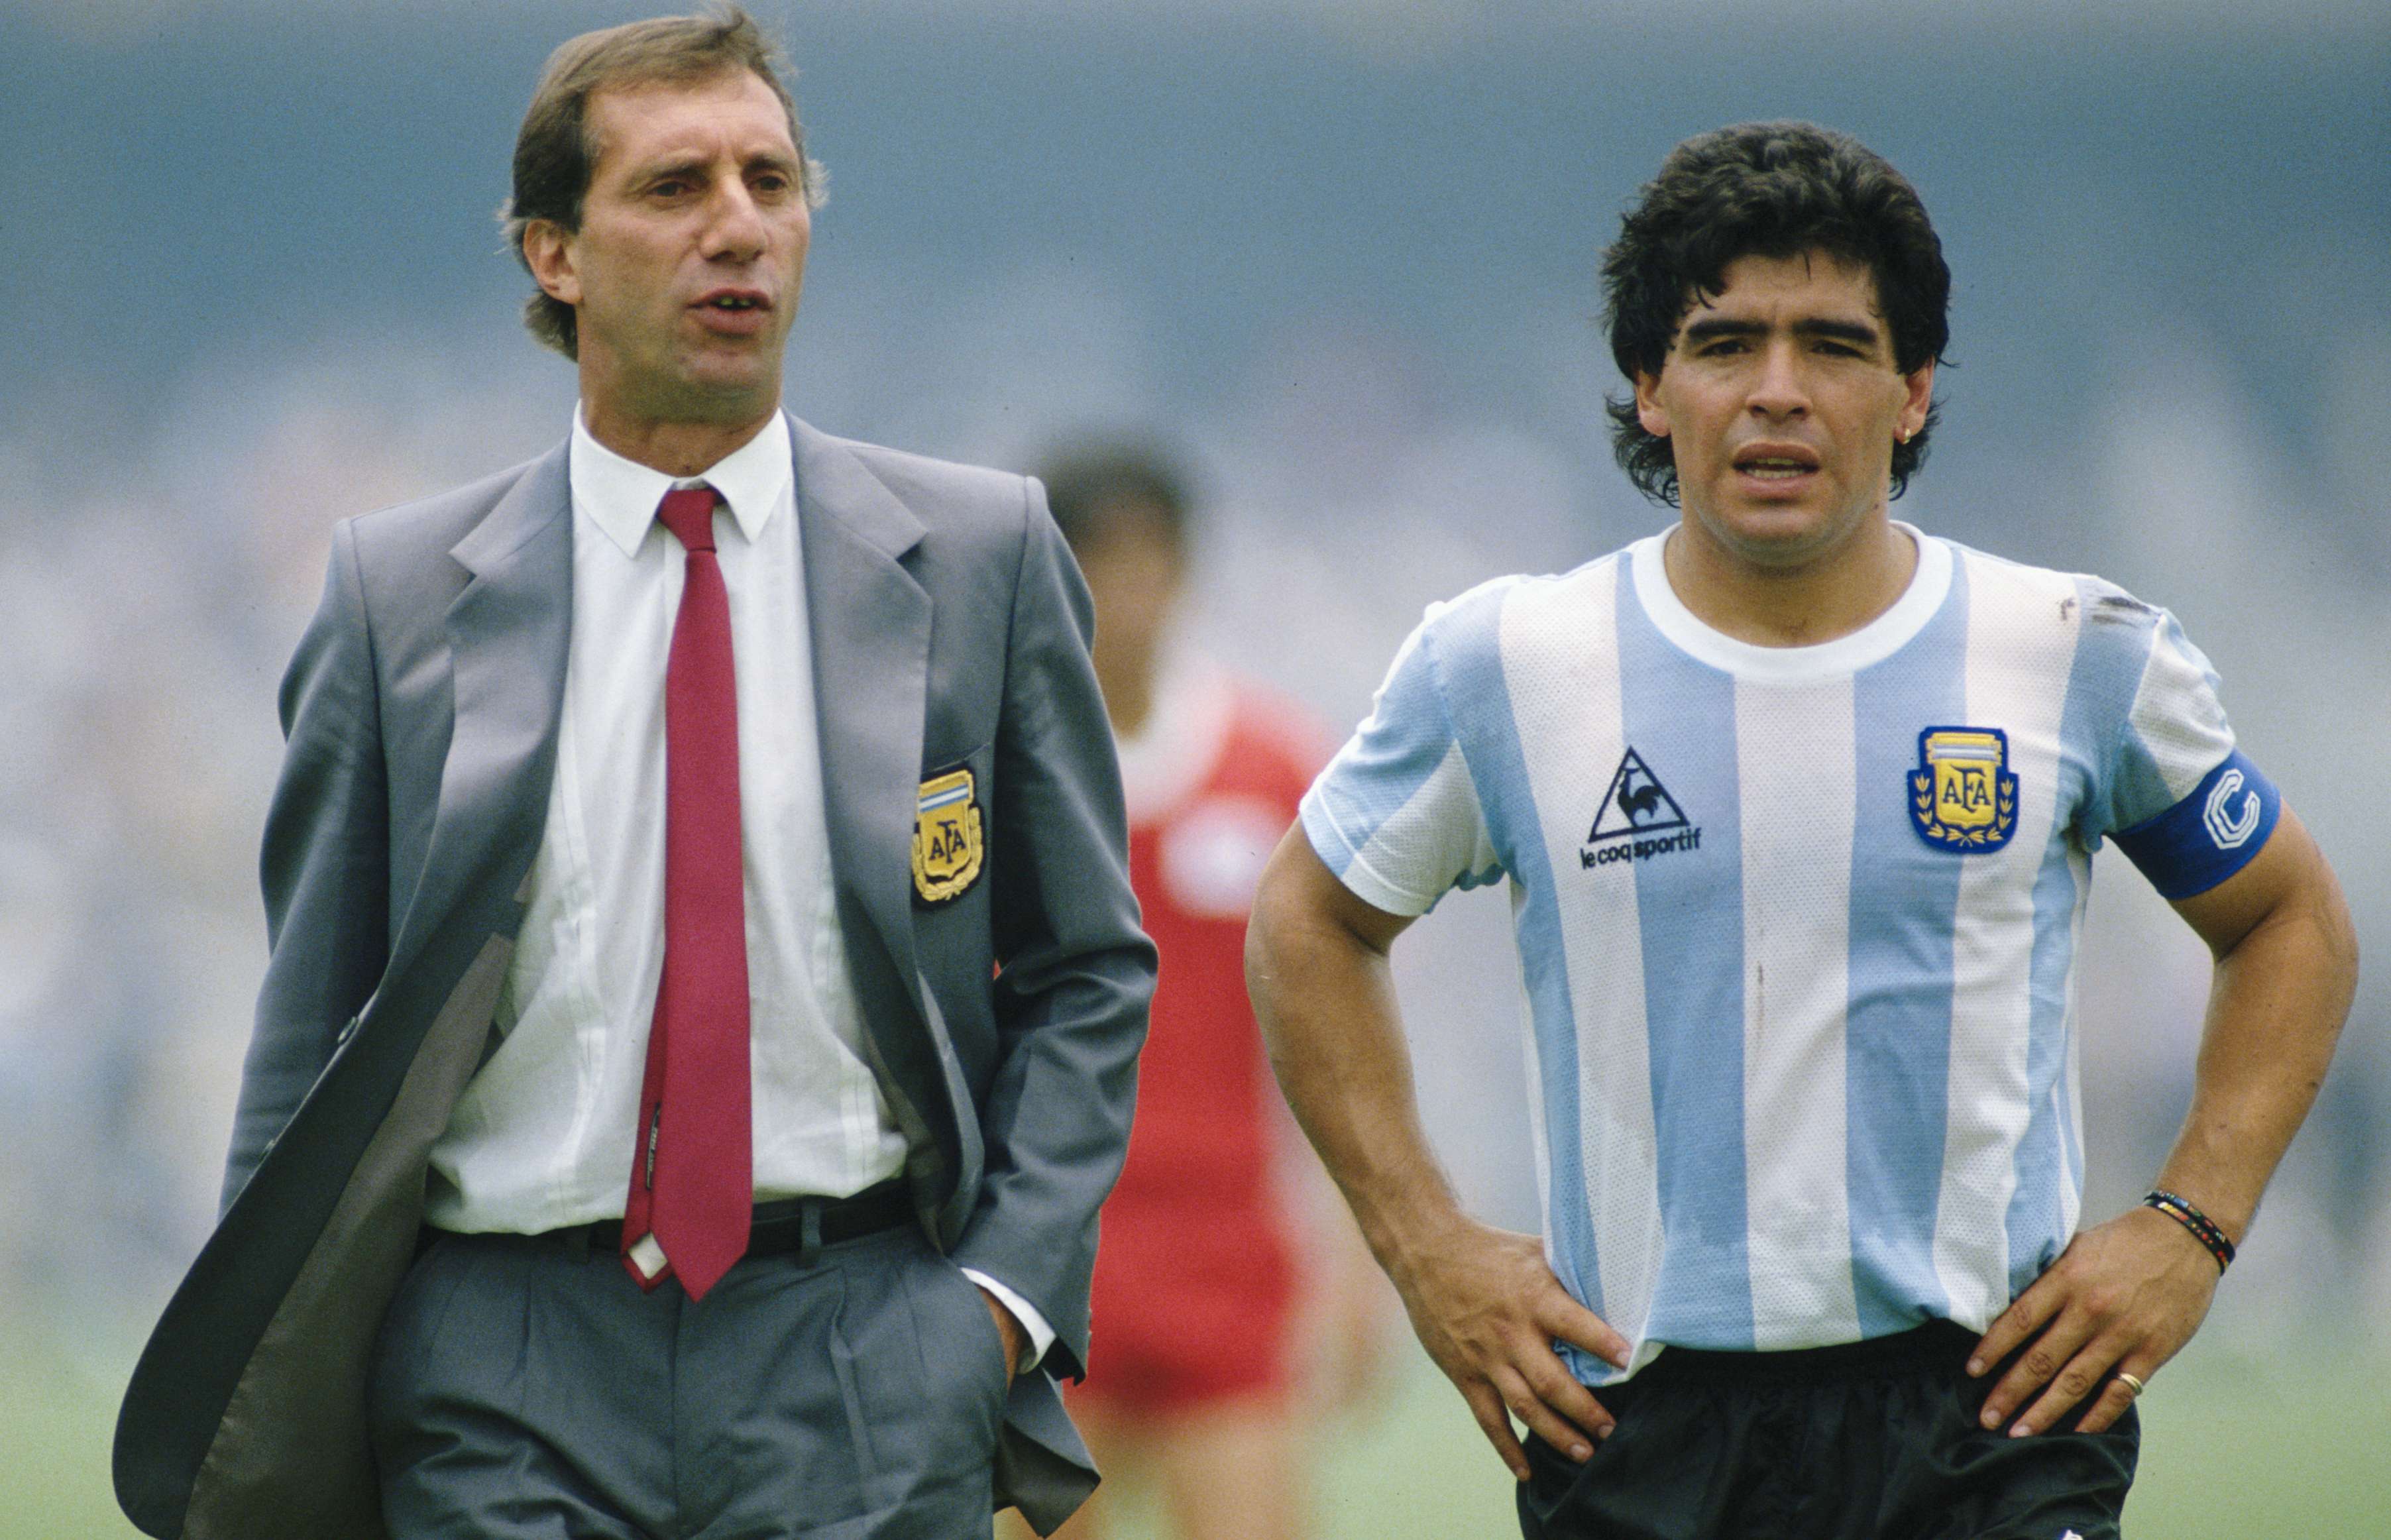 Bilardo señaló a Diego Maradona como líder del equipo. David Cannon/Allsport